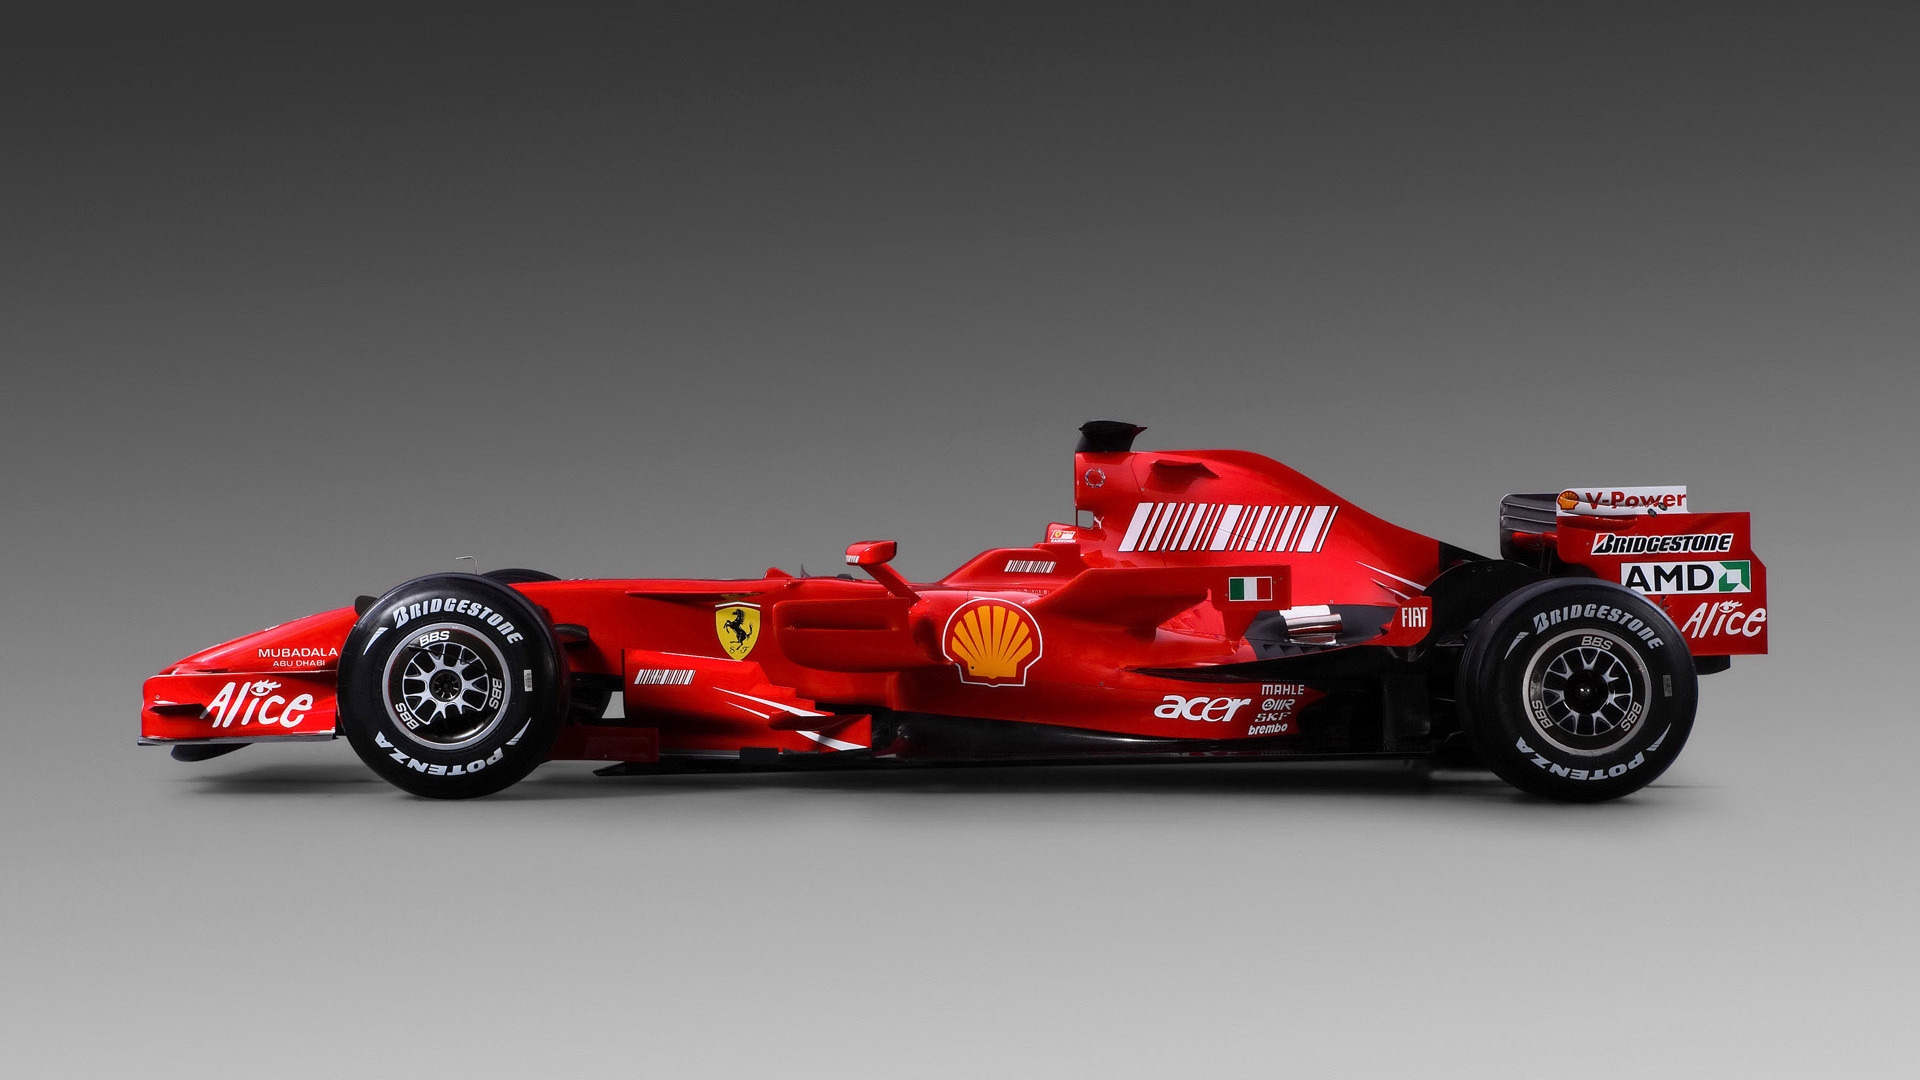 Formula 1 Ferrari Sport for 1920 x 1080 HDTV 1080p resolution